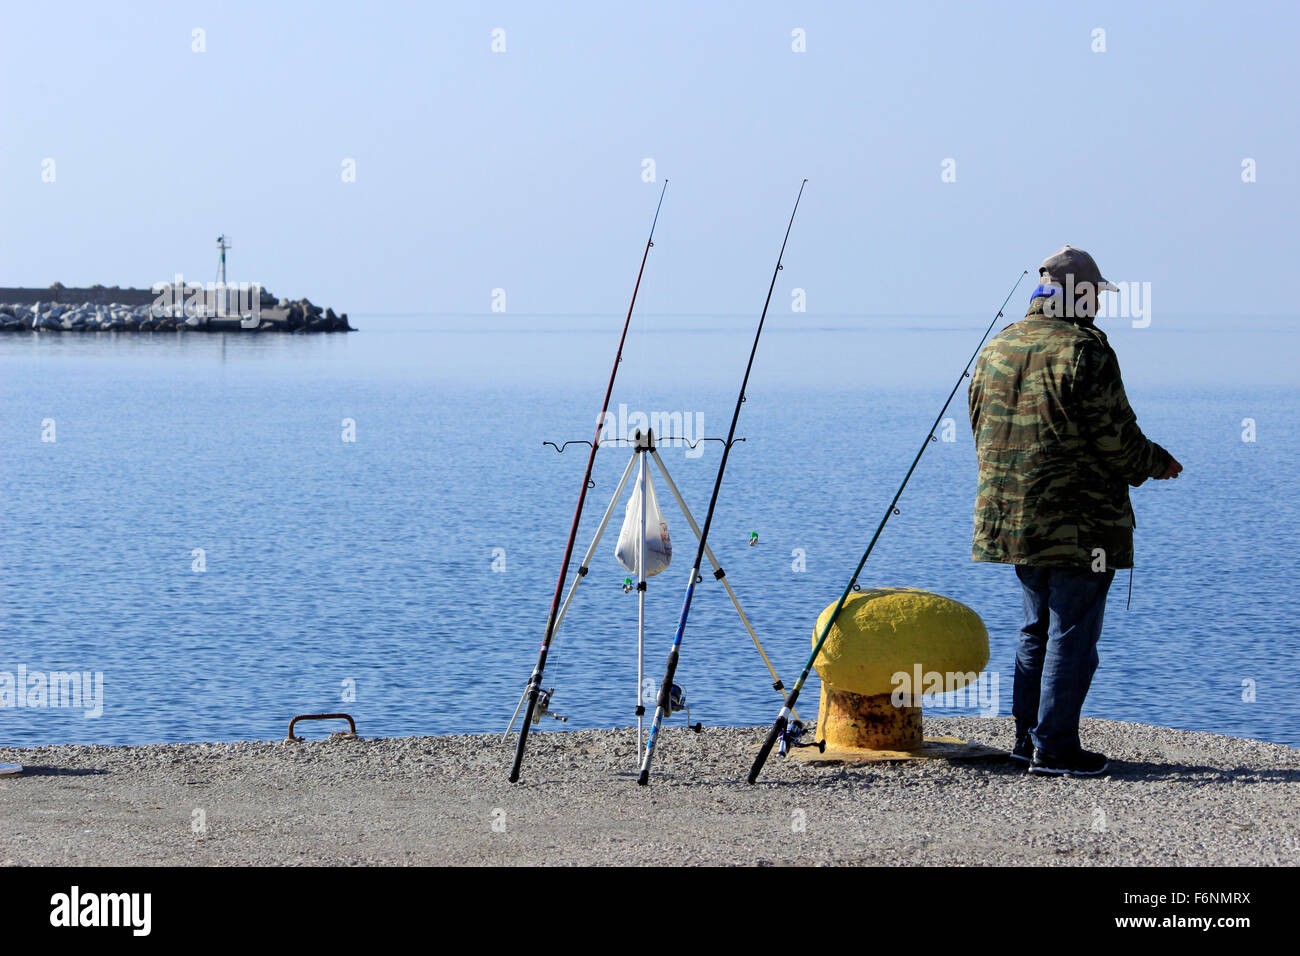 Des cannes à pêche sur leurs titulaires/ stands et un pêcheur amateur debout à la mer du vieux port de Myrina. L'île de Lemnos, GR Banque D'Images